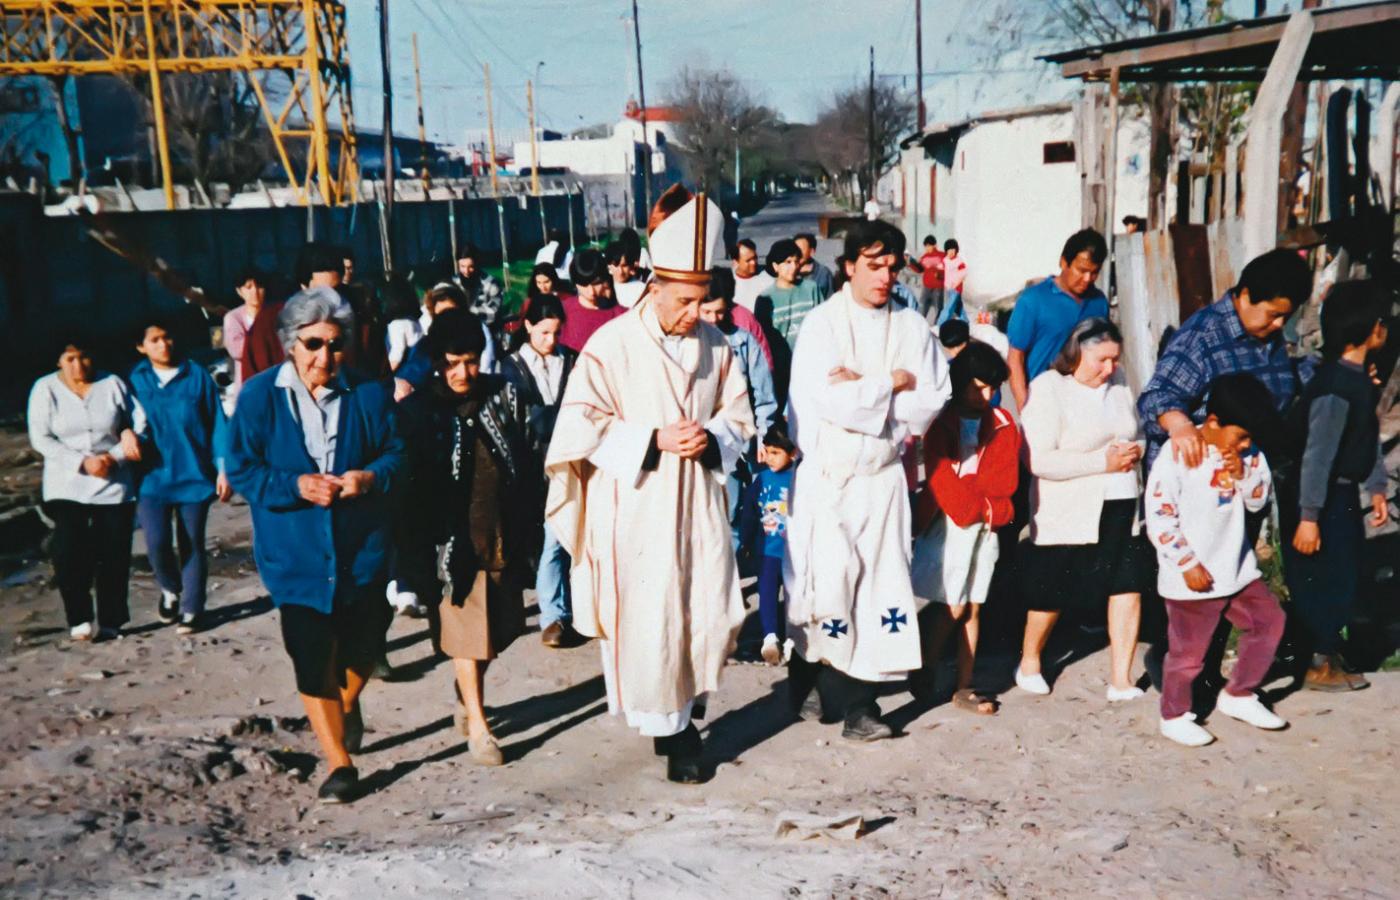 Biskup Jorge Bergoglio z wizytą duszpasterską w faveli Villa 21, 1998 r.